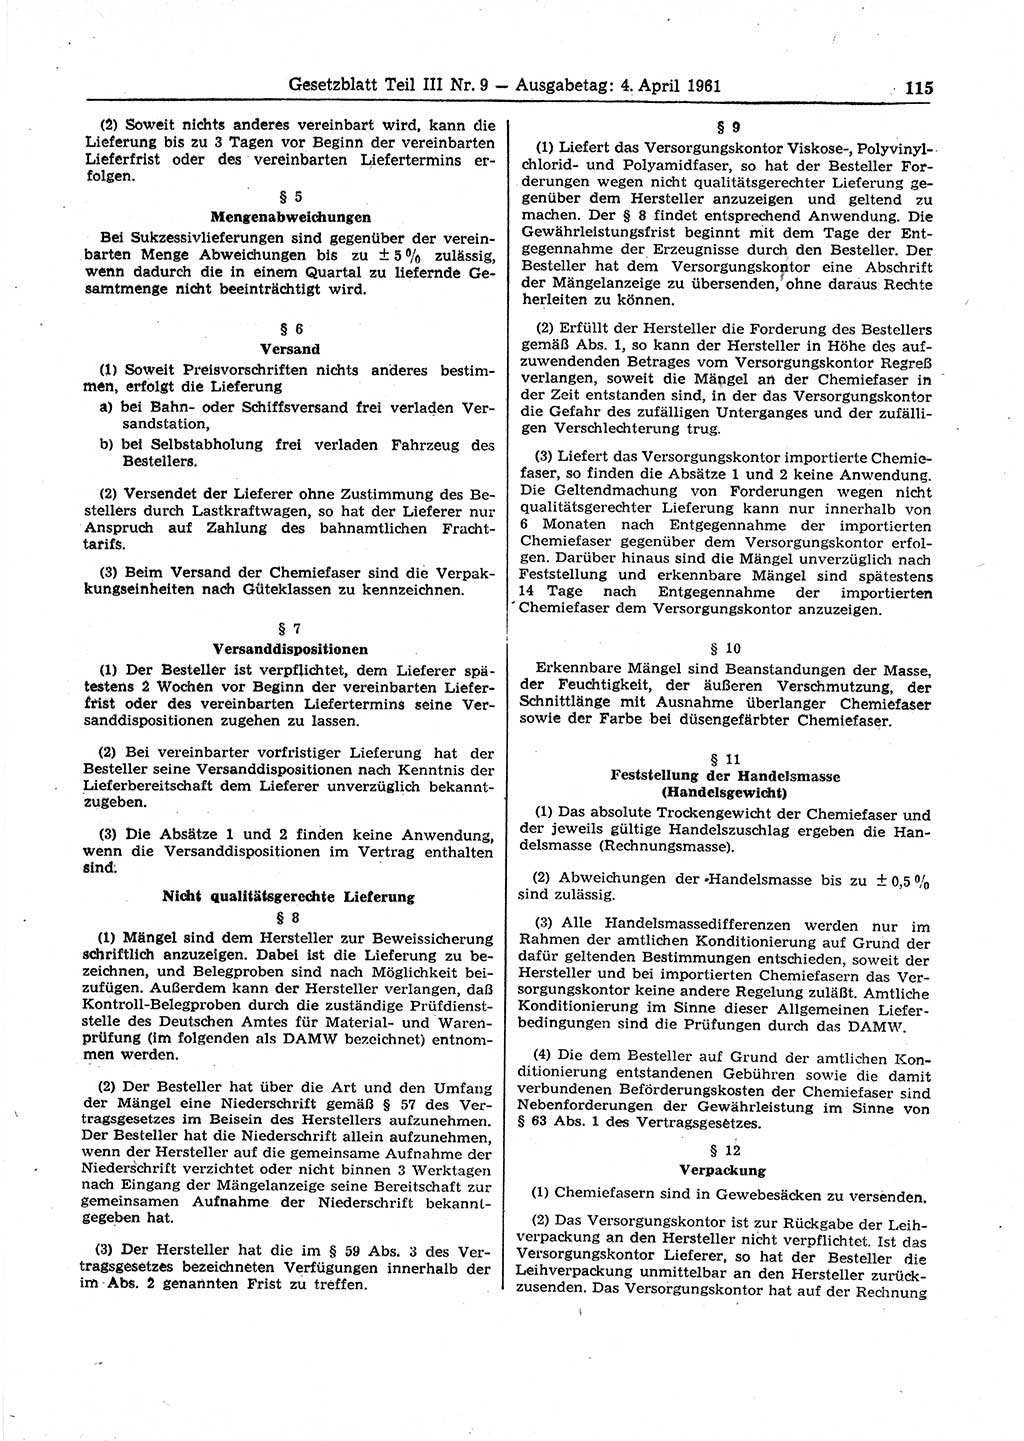 Gesetzblatt (GBl.) der Deutschen Demokratischen Republik (DDR) Teil ⅠⅠⅠ 1961, Seite 115 (GBl. DDR ⅠⅠⅠ 1961, S. 115)